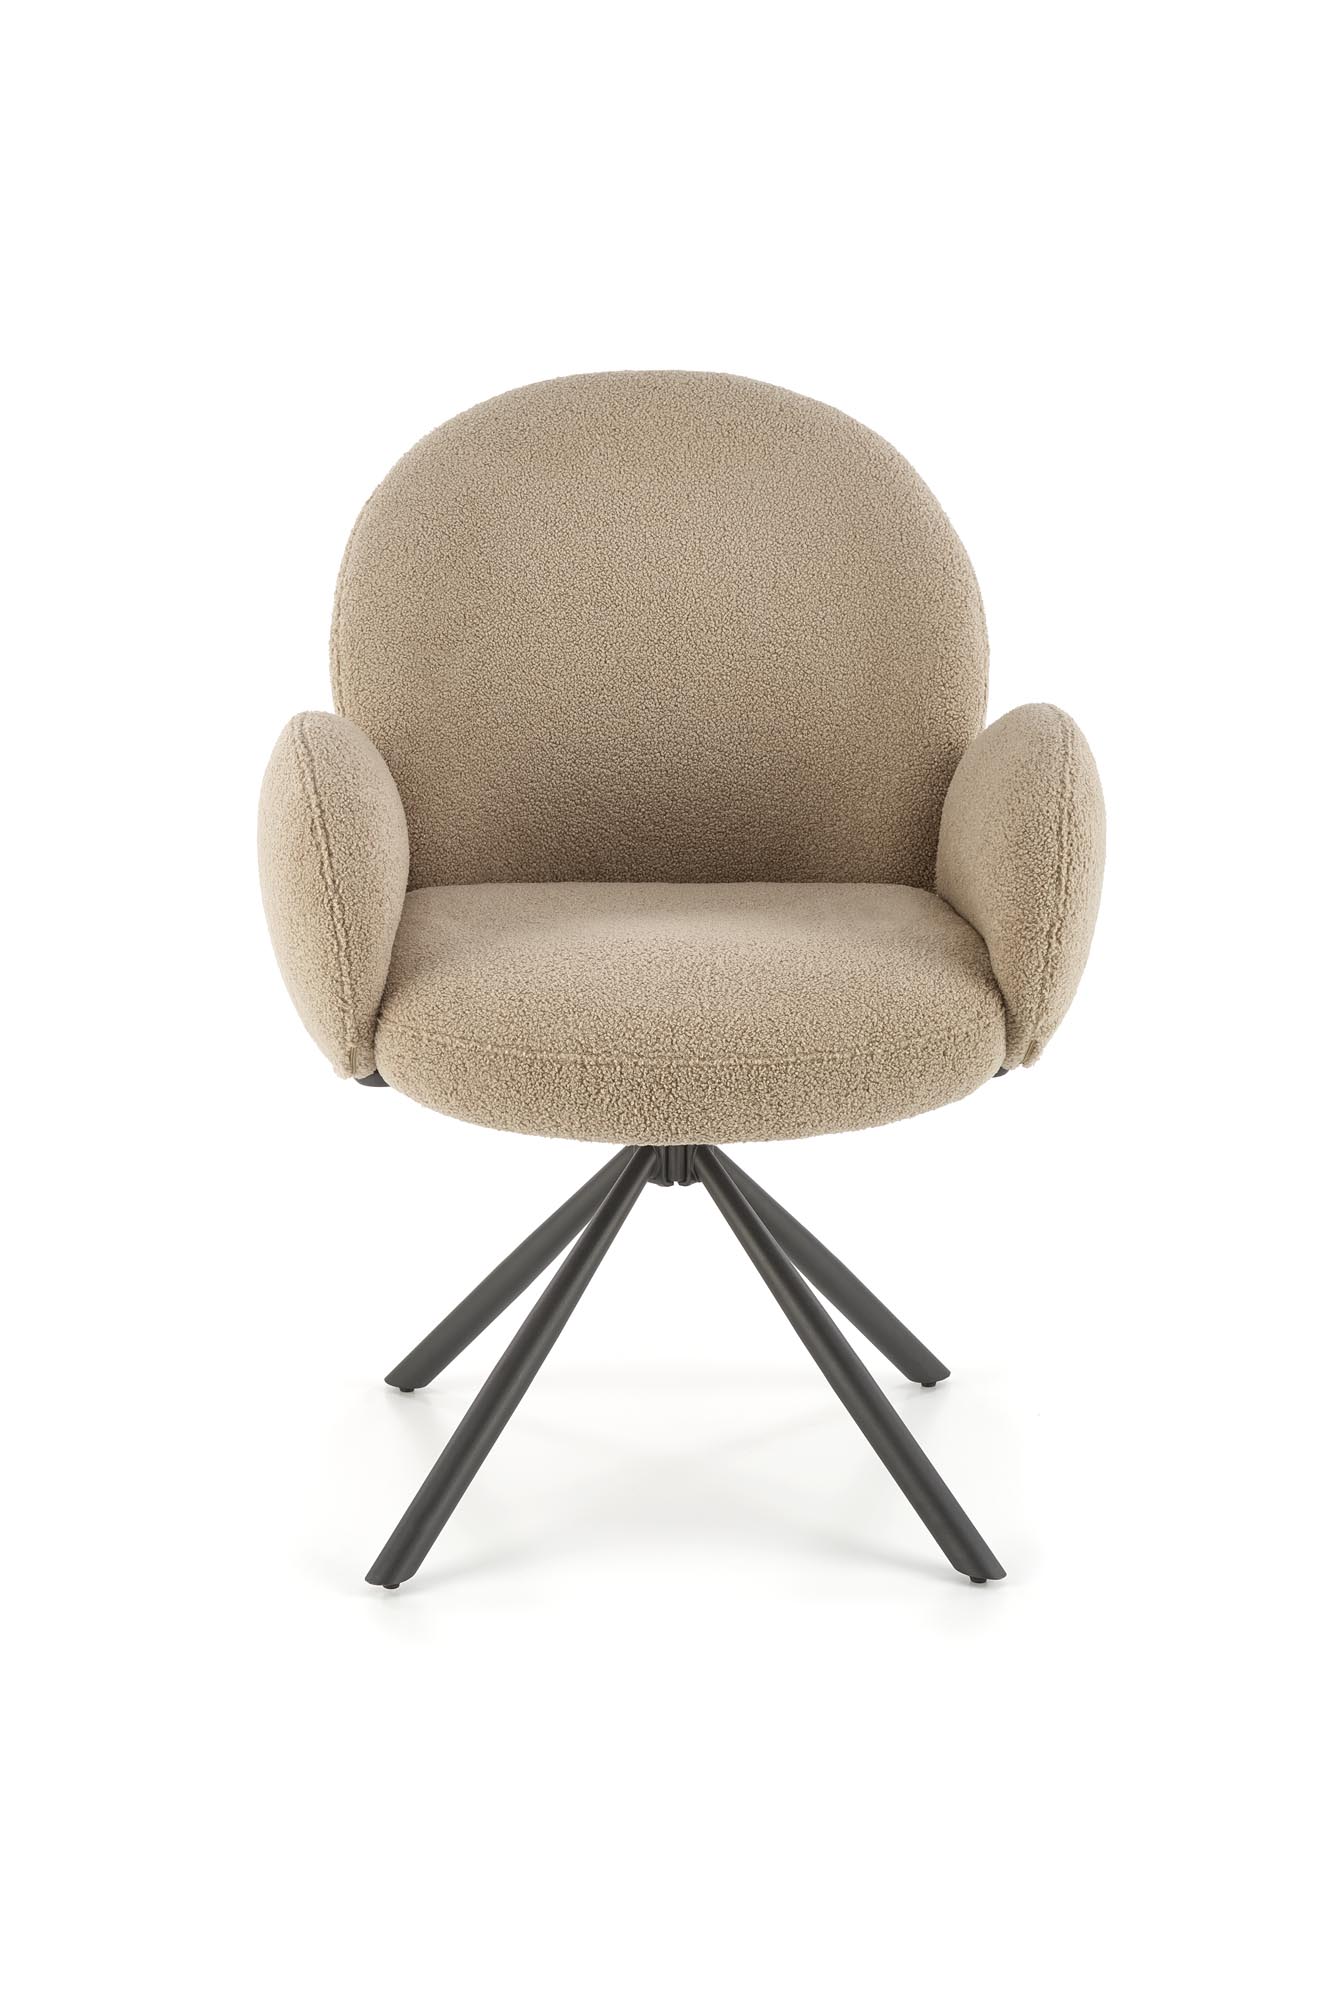 K498 Židle béžový Židle čalouněná k498 - béžový